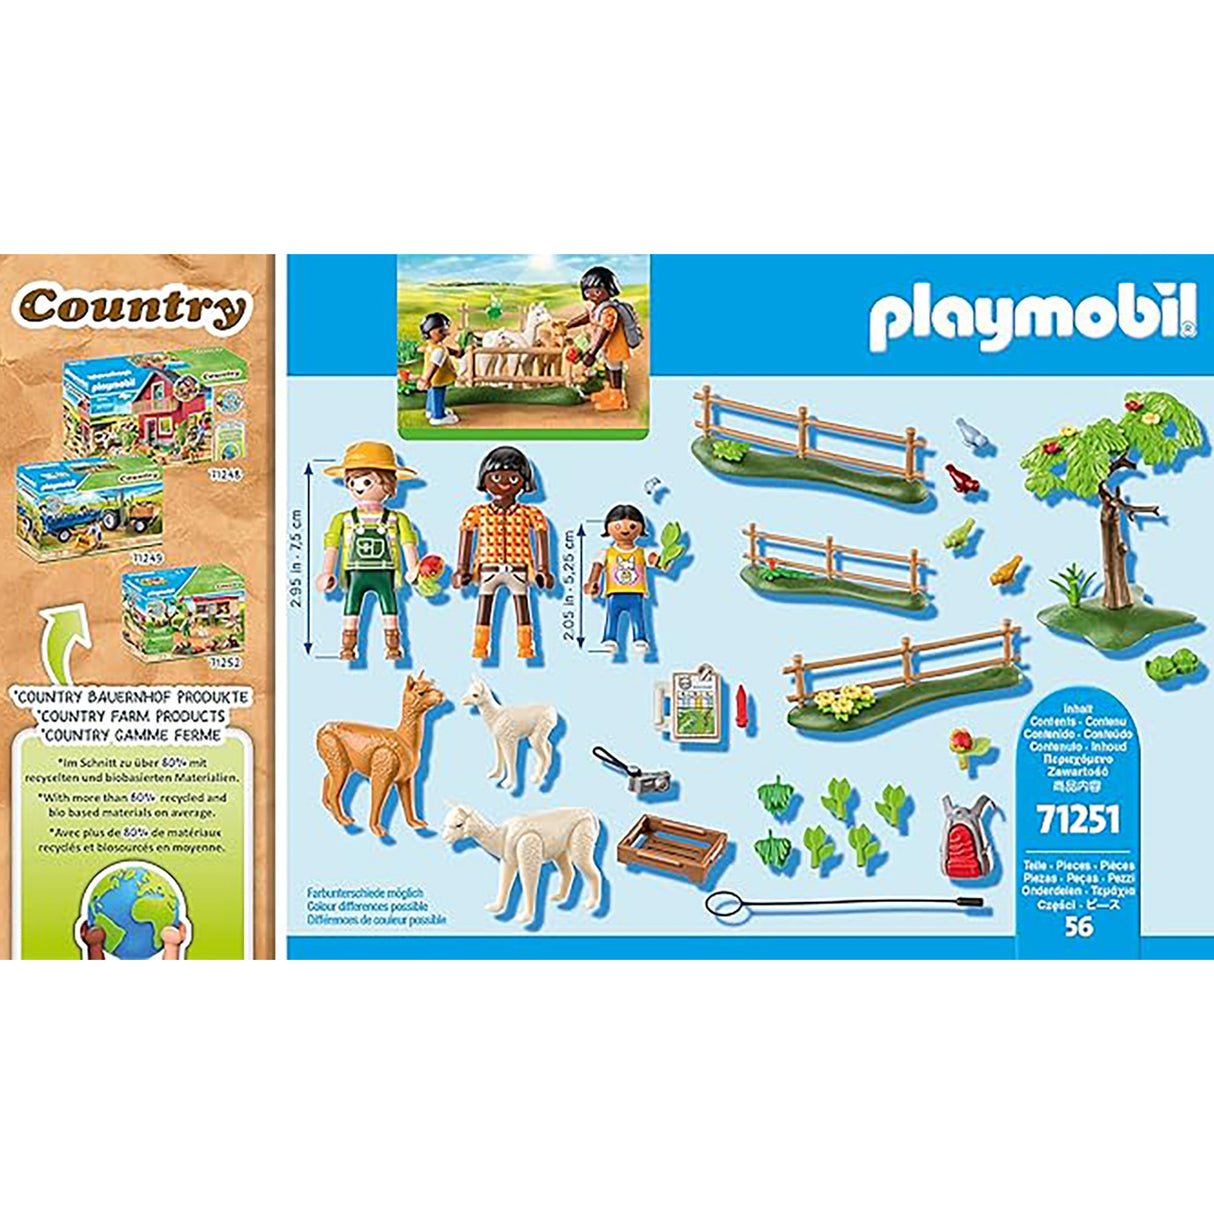 Playmobil Alpaca Walk (56 pieces)